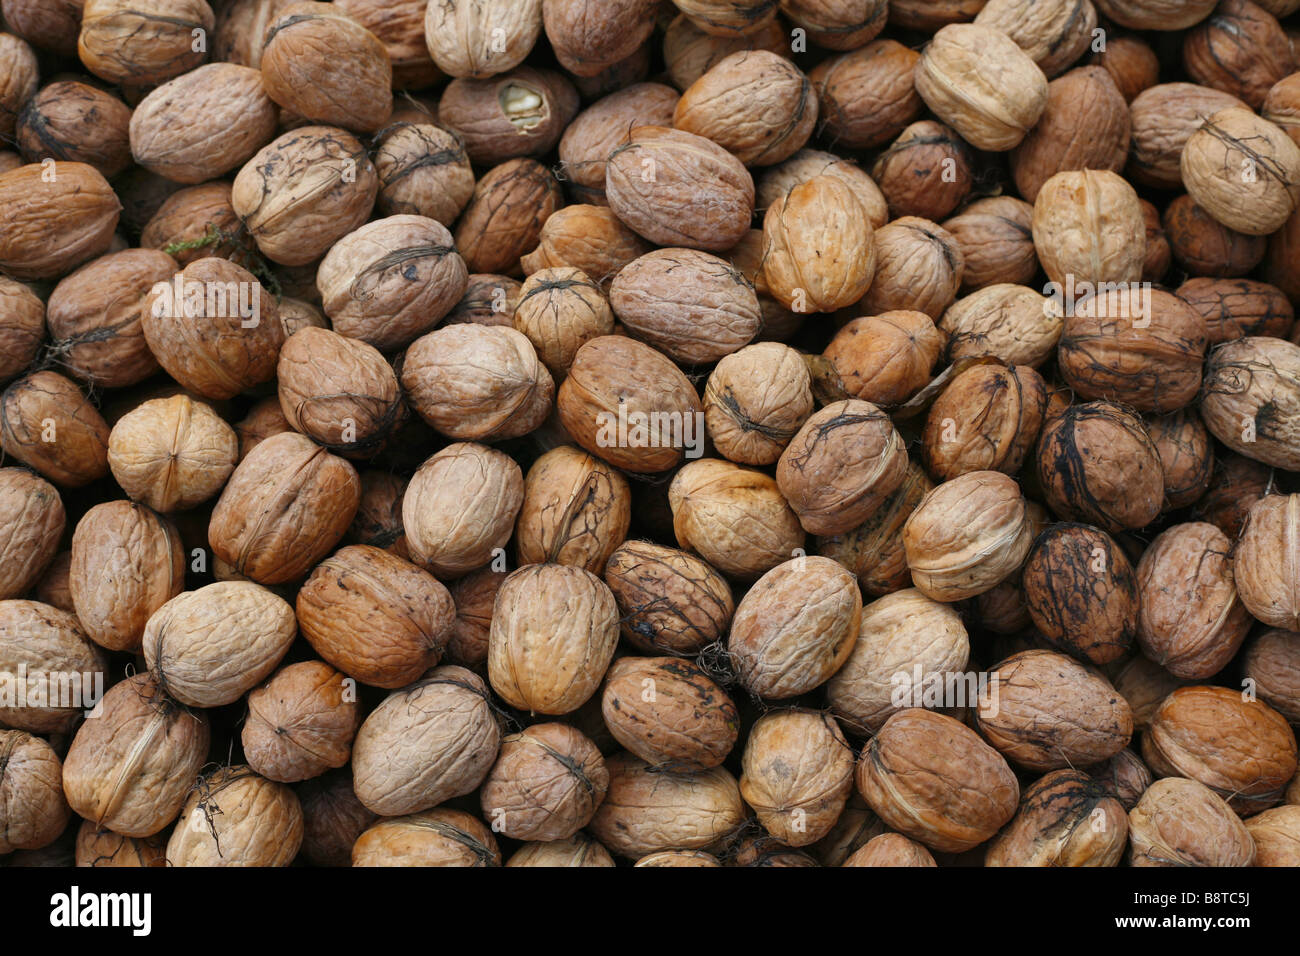 walnut (Juglans regia), walnuts Stock Photo